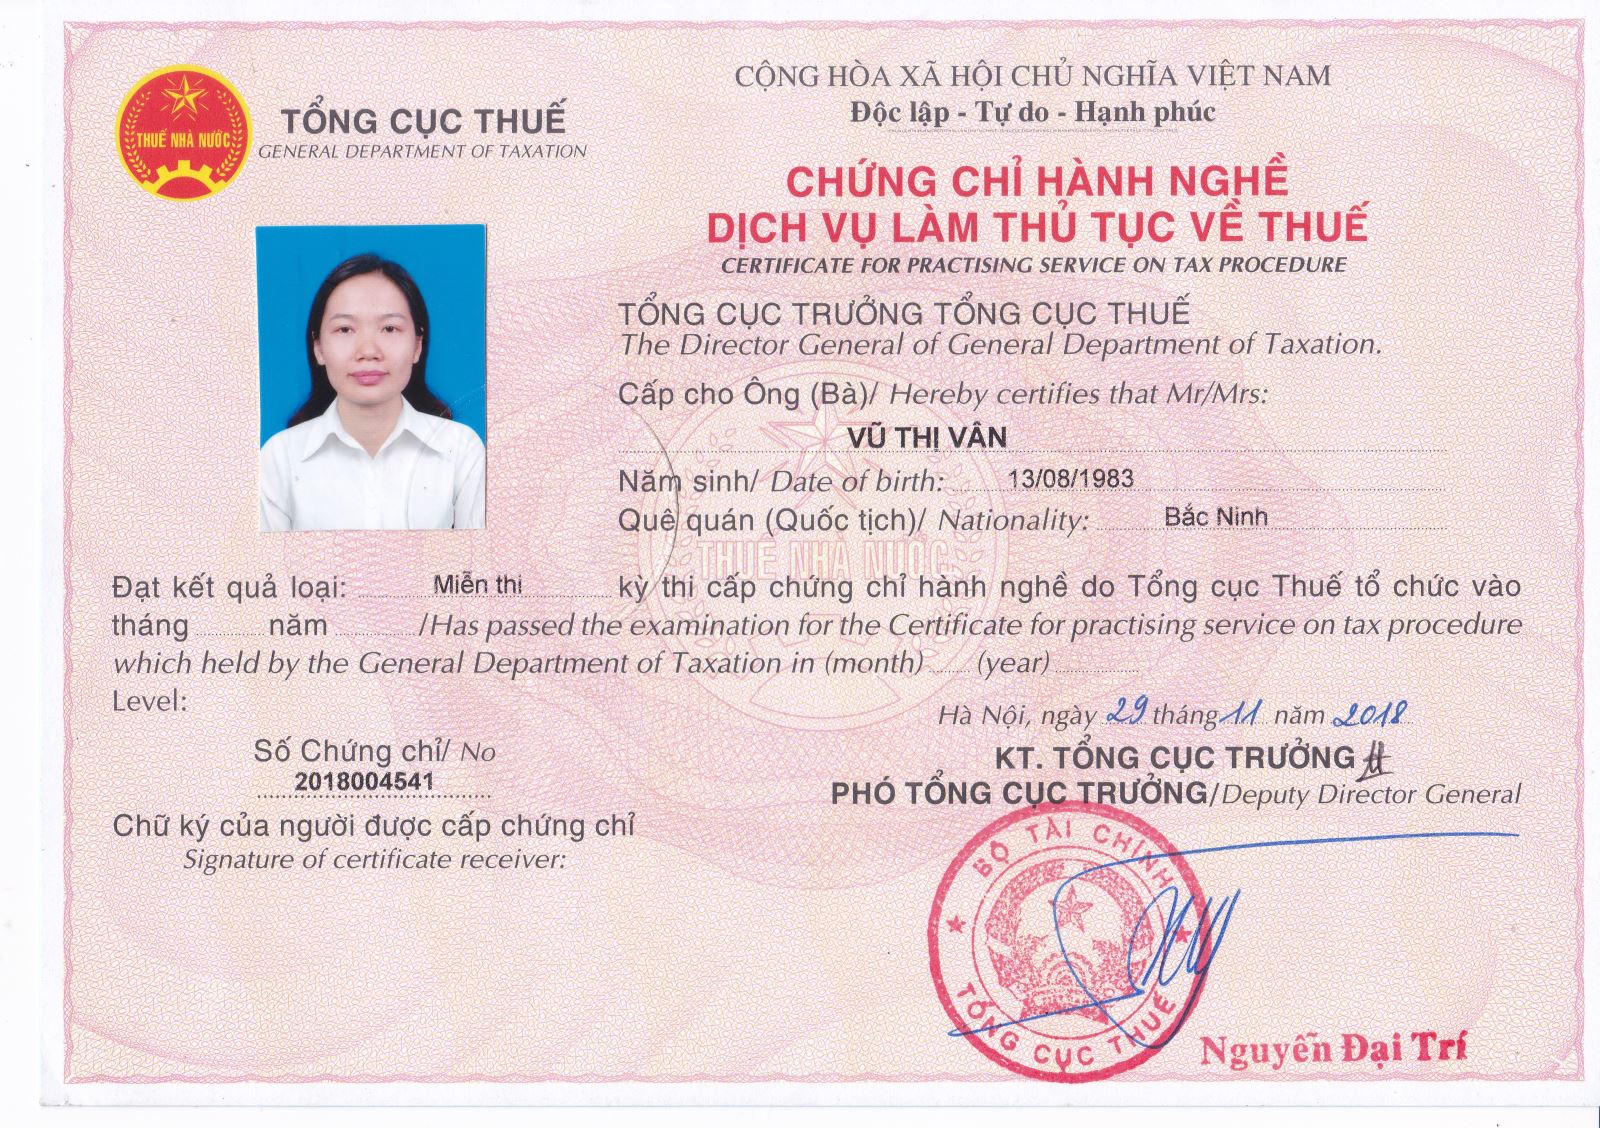 Chuyên viên kế toán, Tư vấn thuế - Vũ Thị Vân